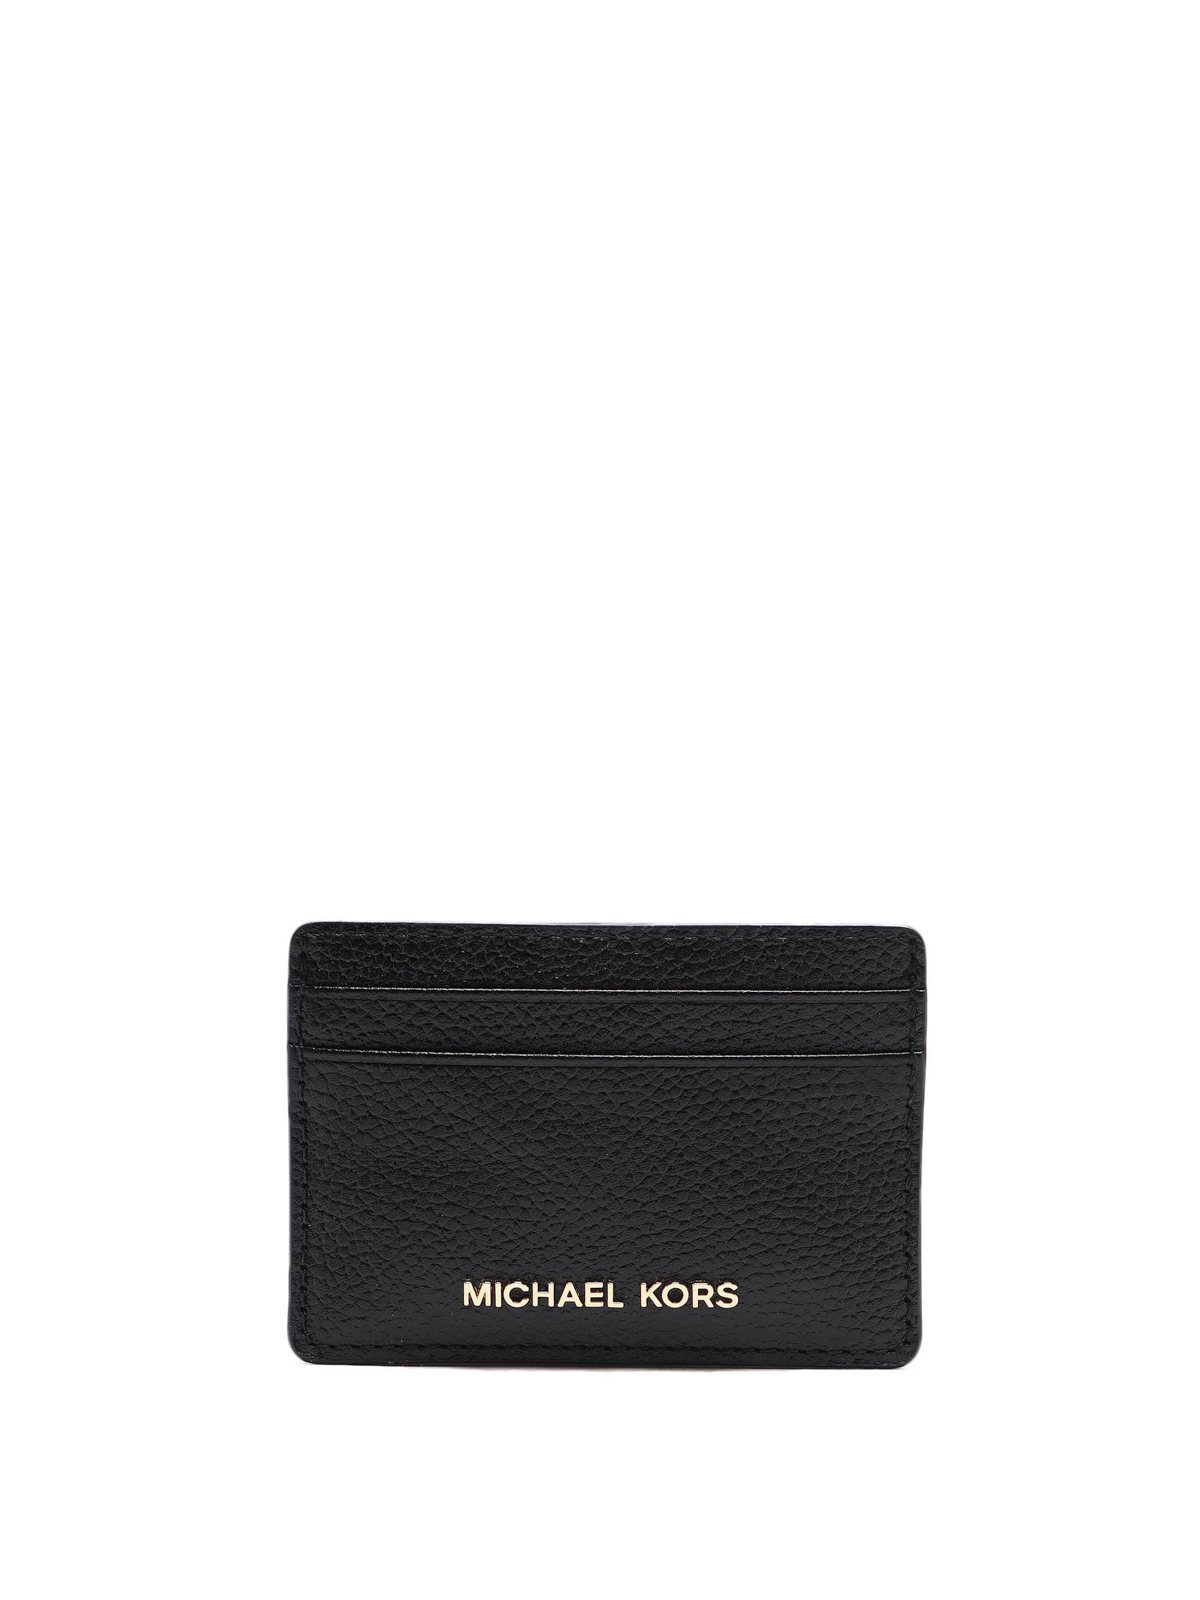 Michael Kors Jet Set Leather Cardholder In Black